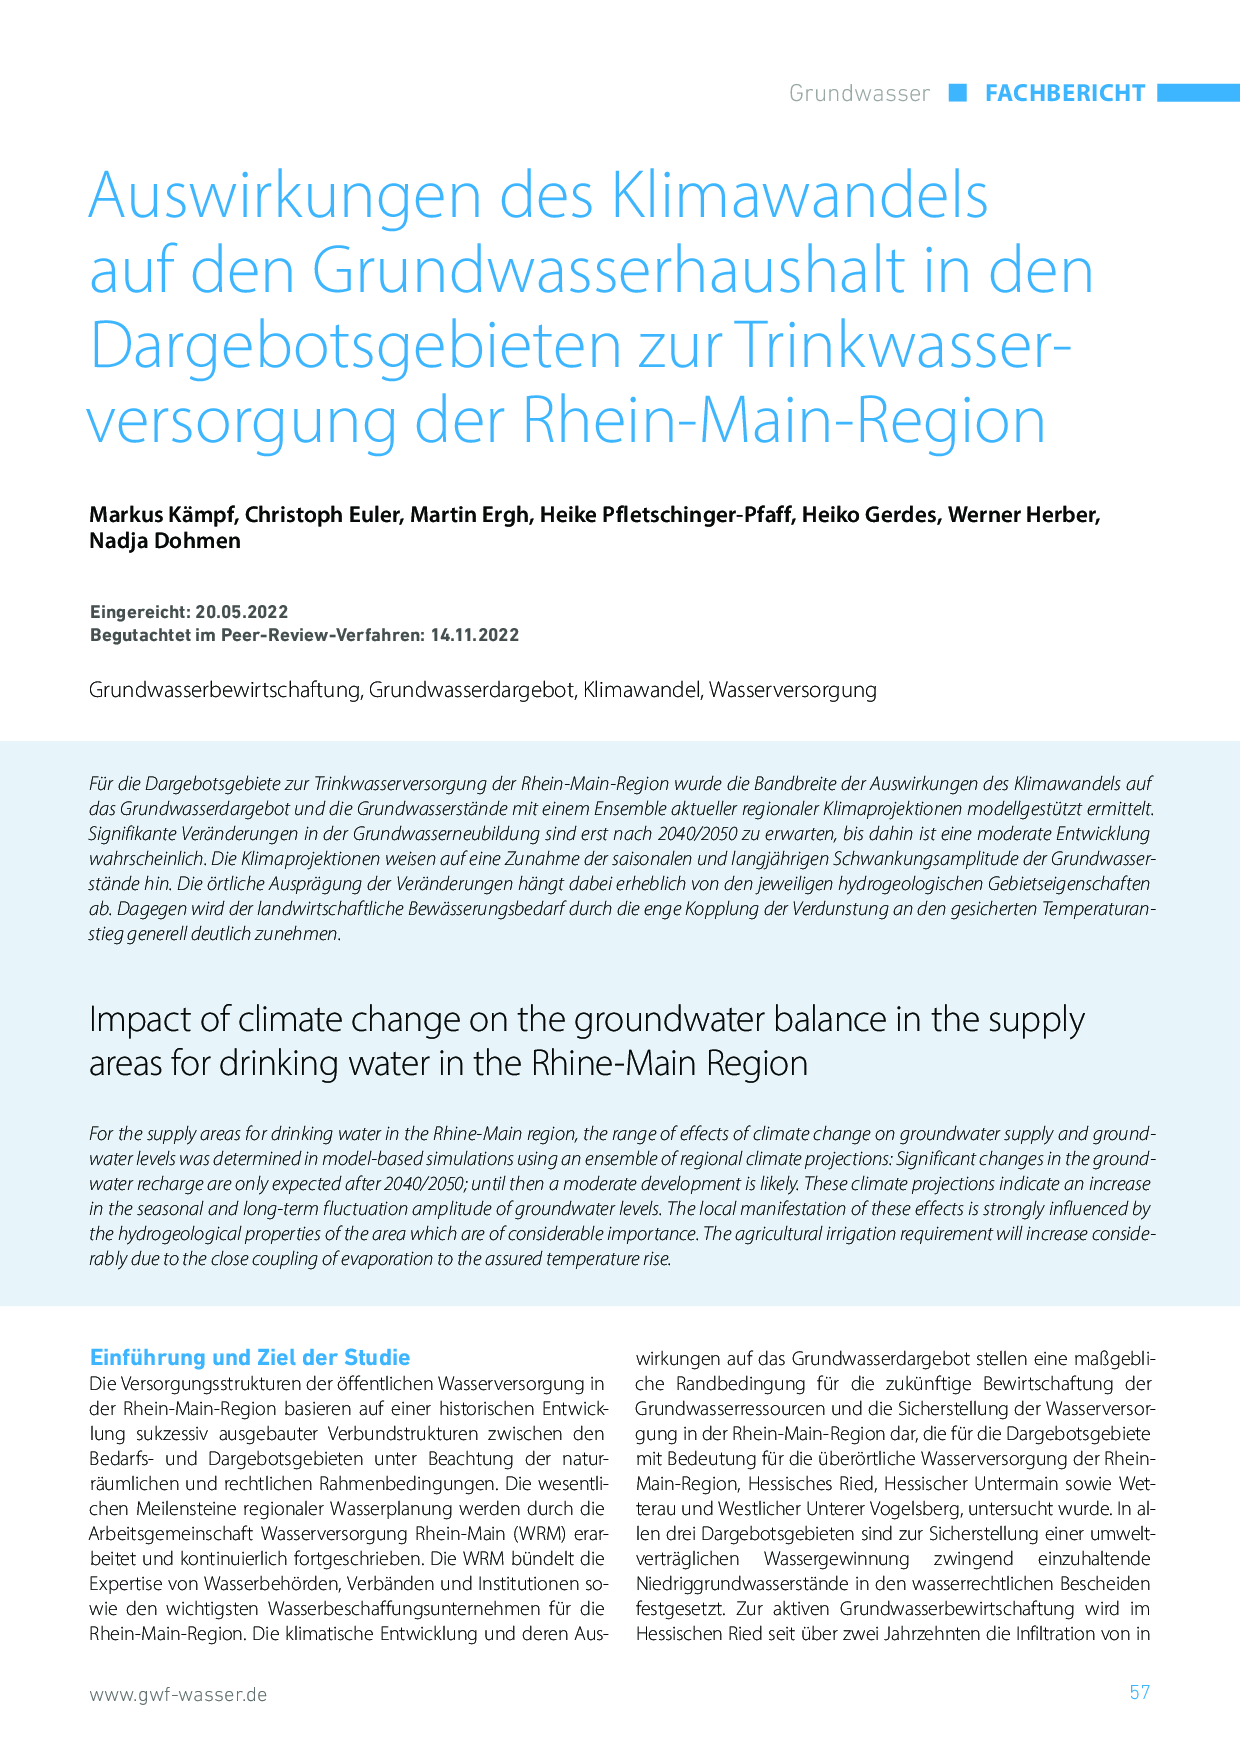 Auswirkungen des Klimawandels auf den Grundwasserhaushalt in den Dargebotsgebieten zur Trinkwasserversorgung der Rhein-Main-Region